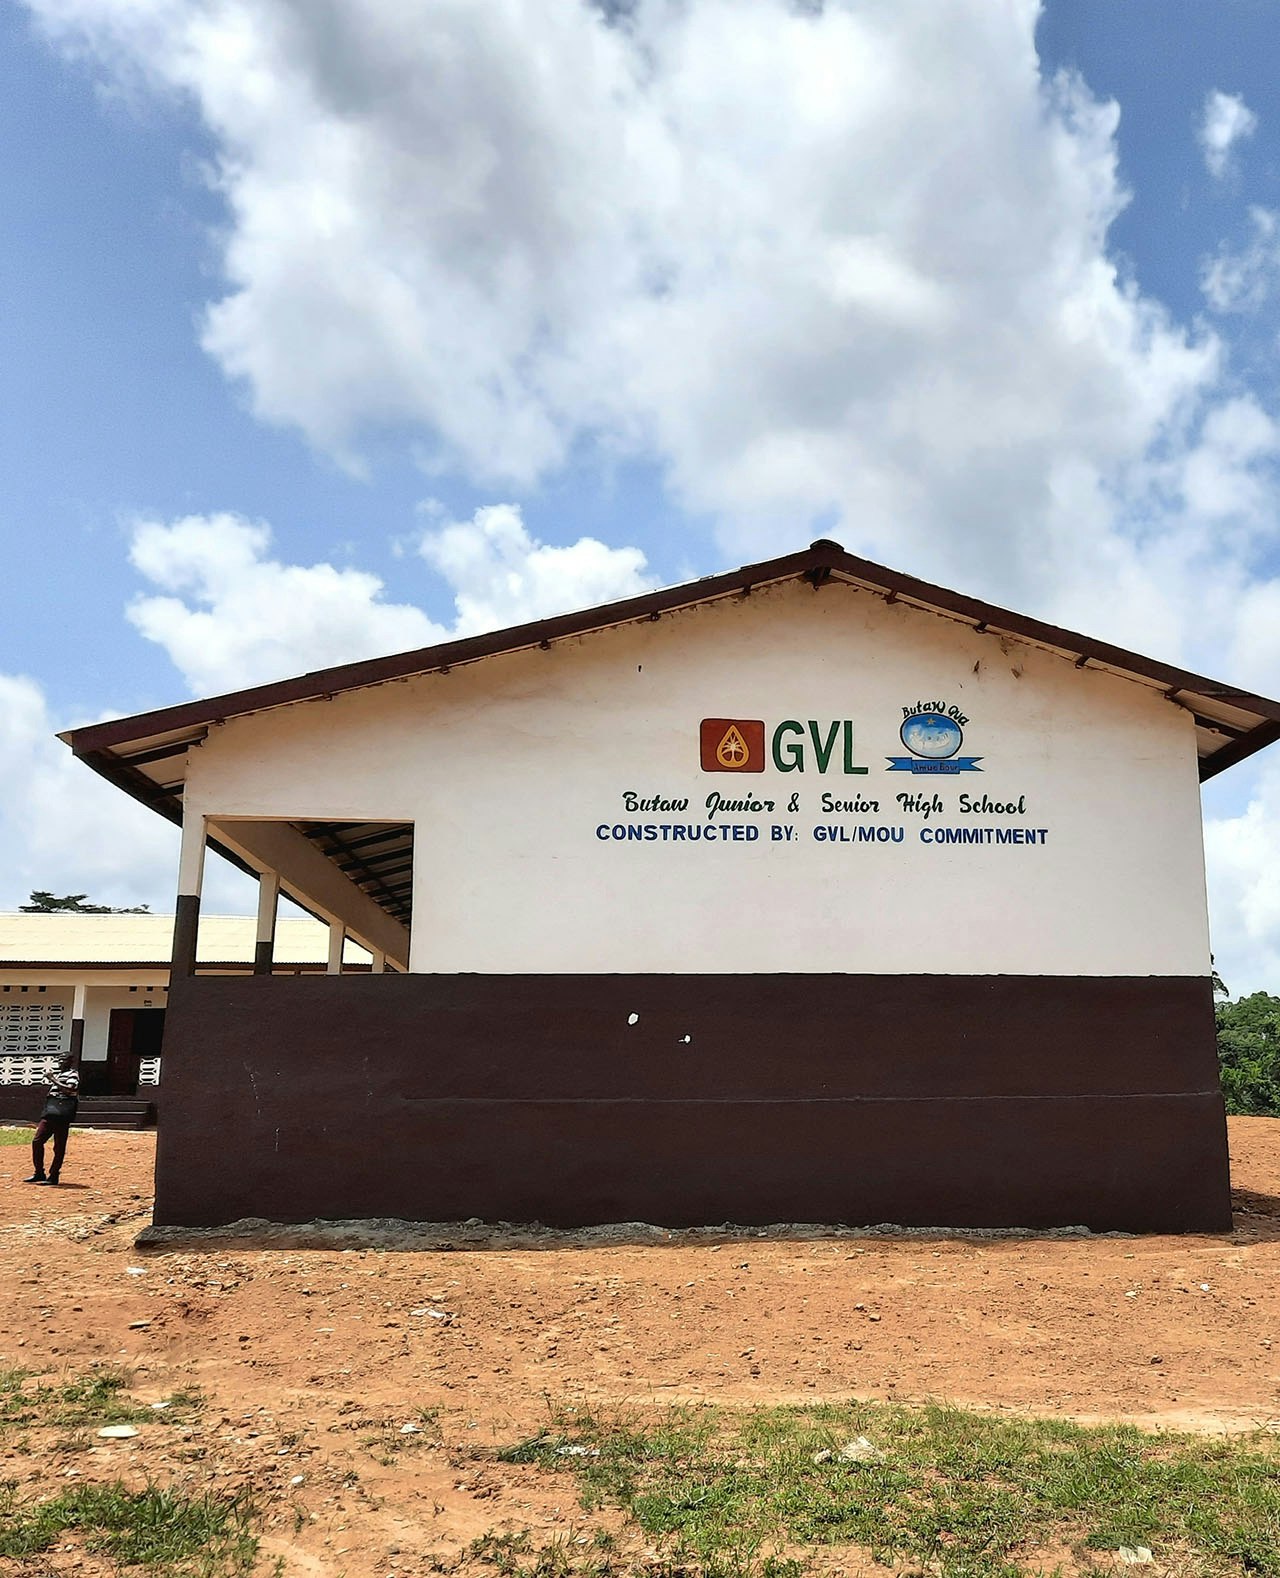 Een school gebouwd door Golden Veroleum in Butaw, Sinoe County. De school maakt onderdeel uit van de afspraak dat het bedrijf moet bijdragen aan de ontwikkeling van Liberia. De leraren wachten echter nog steeds op hun salaris.